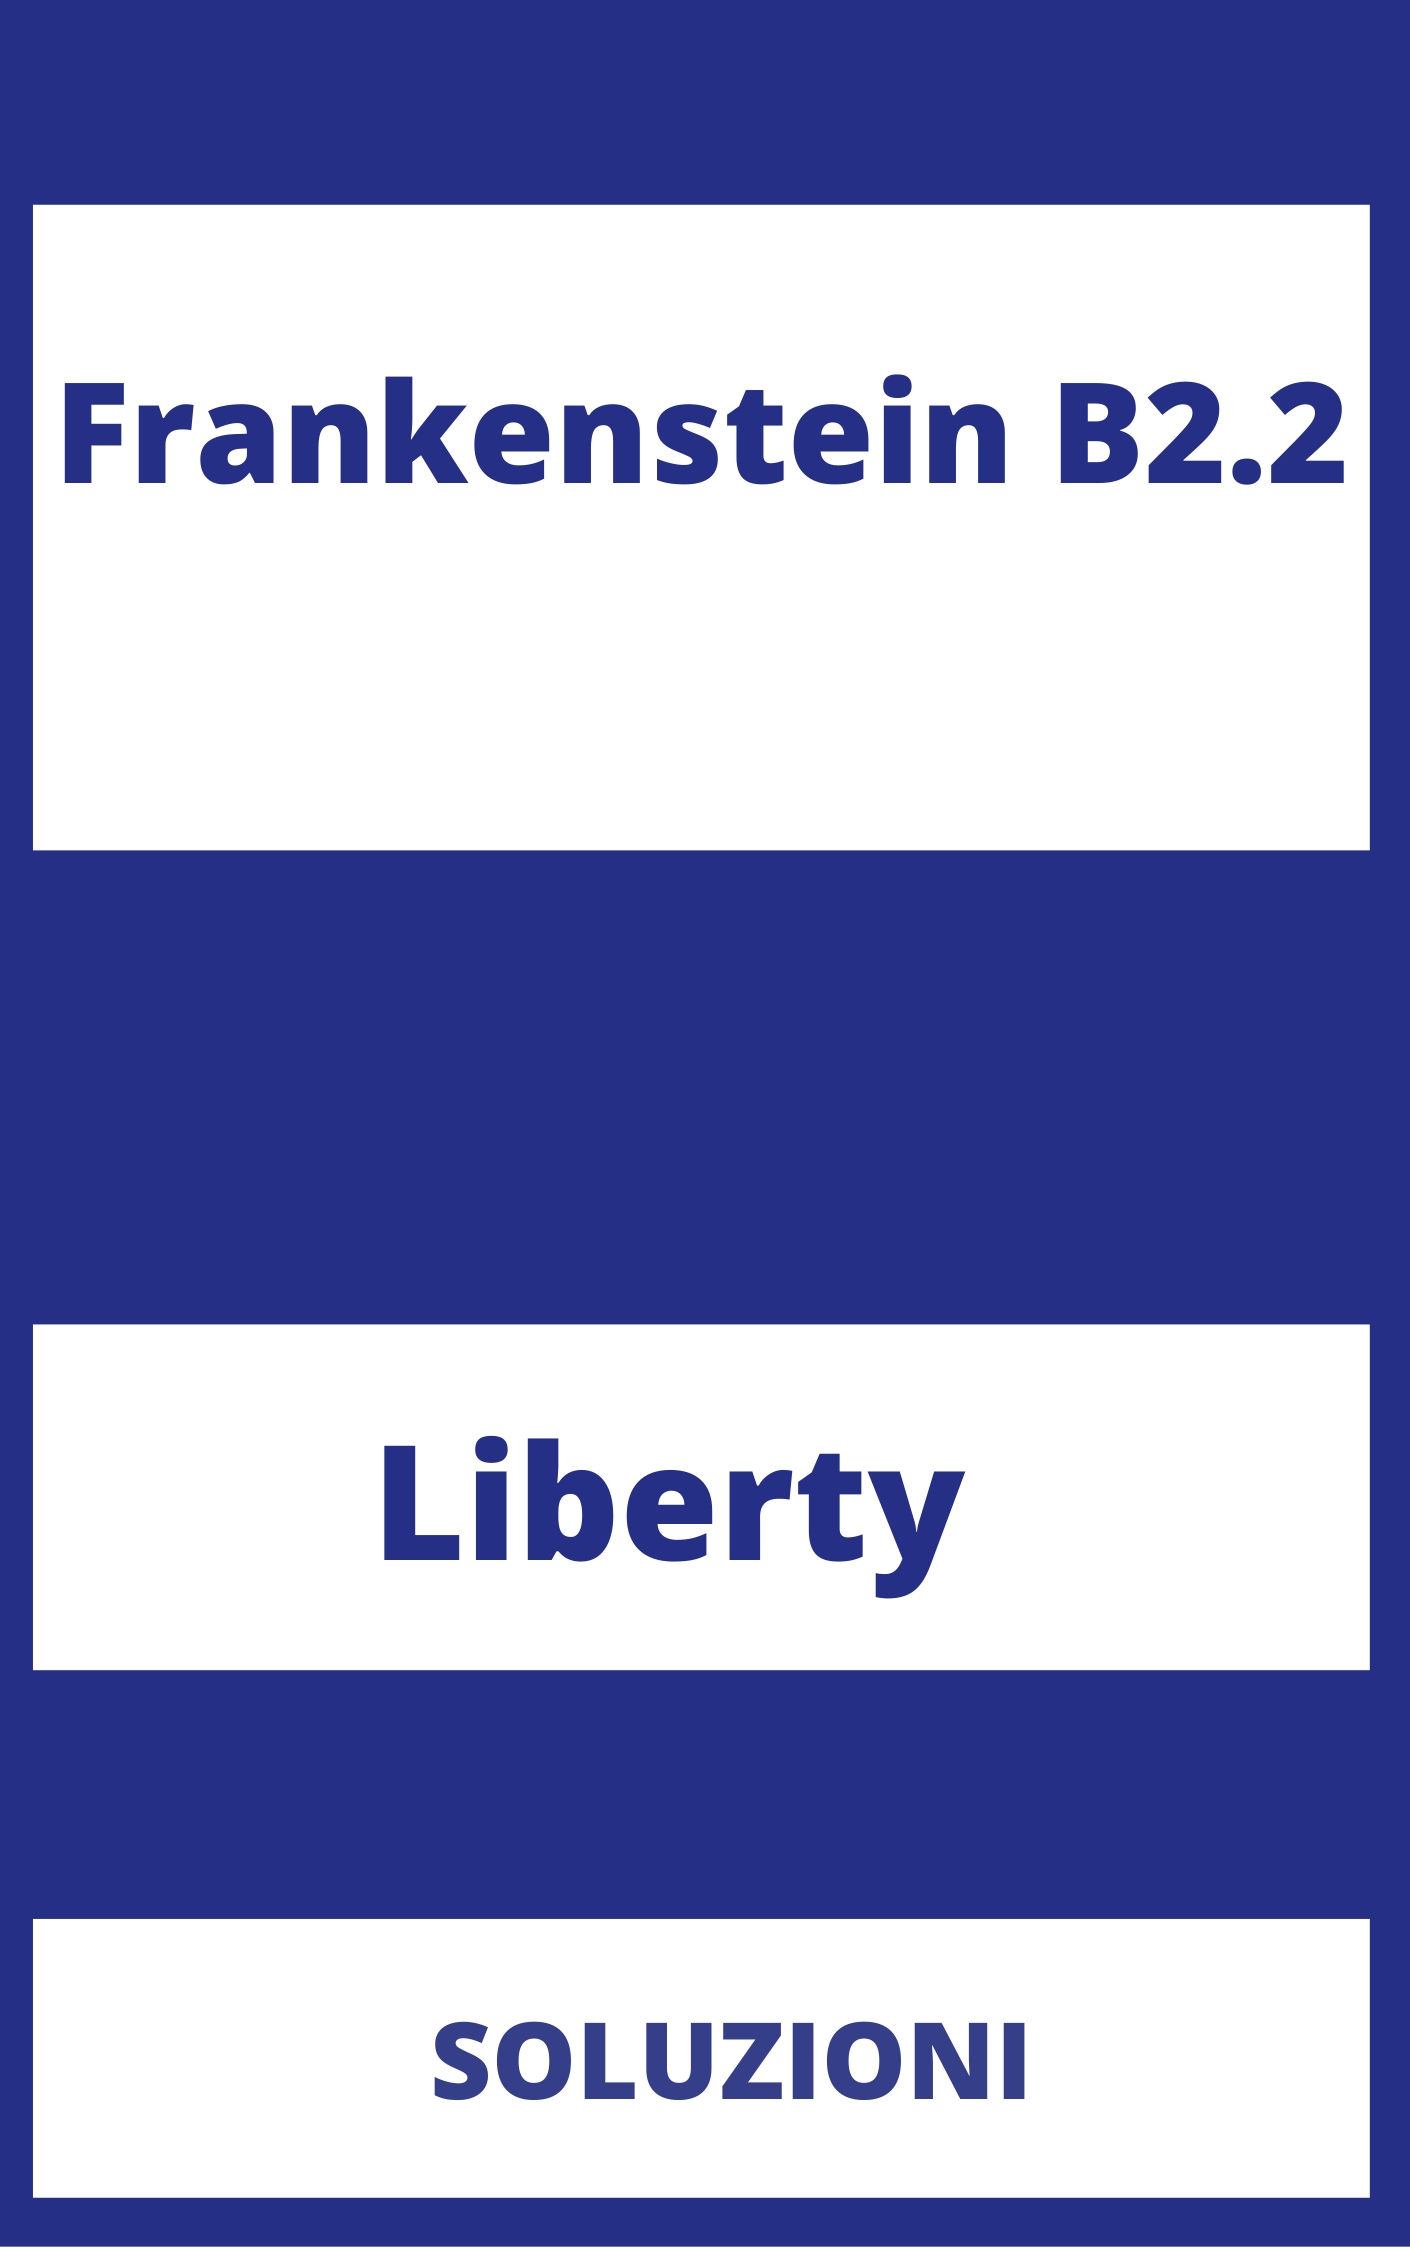 Frankenstein B2.2